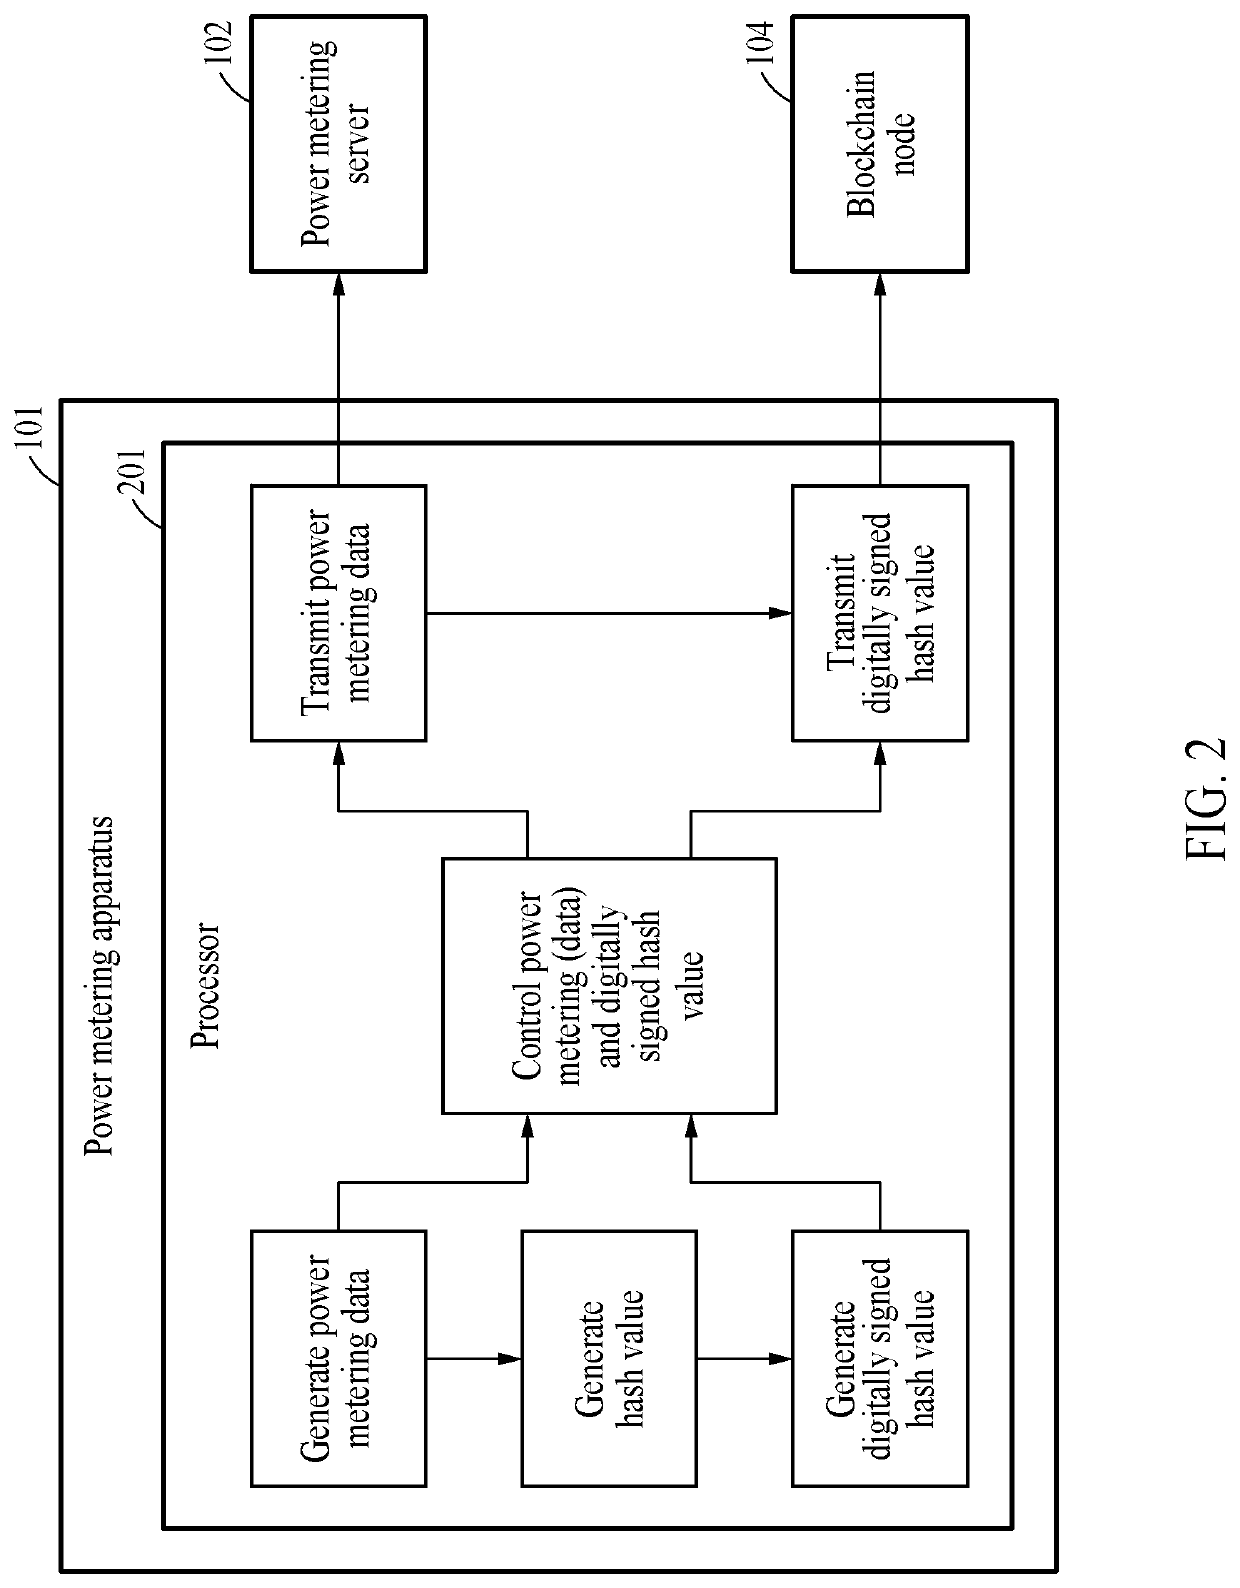 Power metering apparatus, power metering server, and power metering method based on blockchain